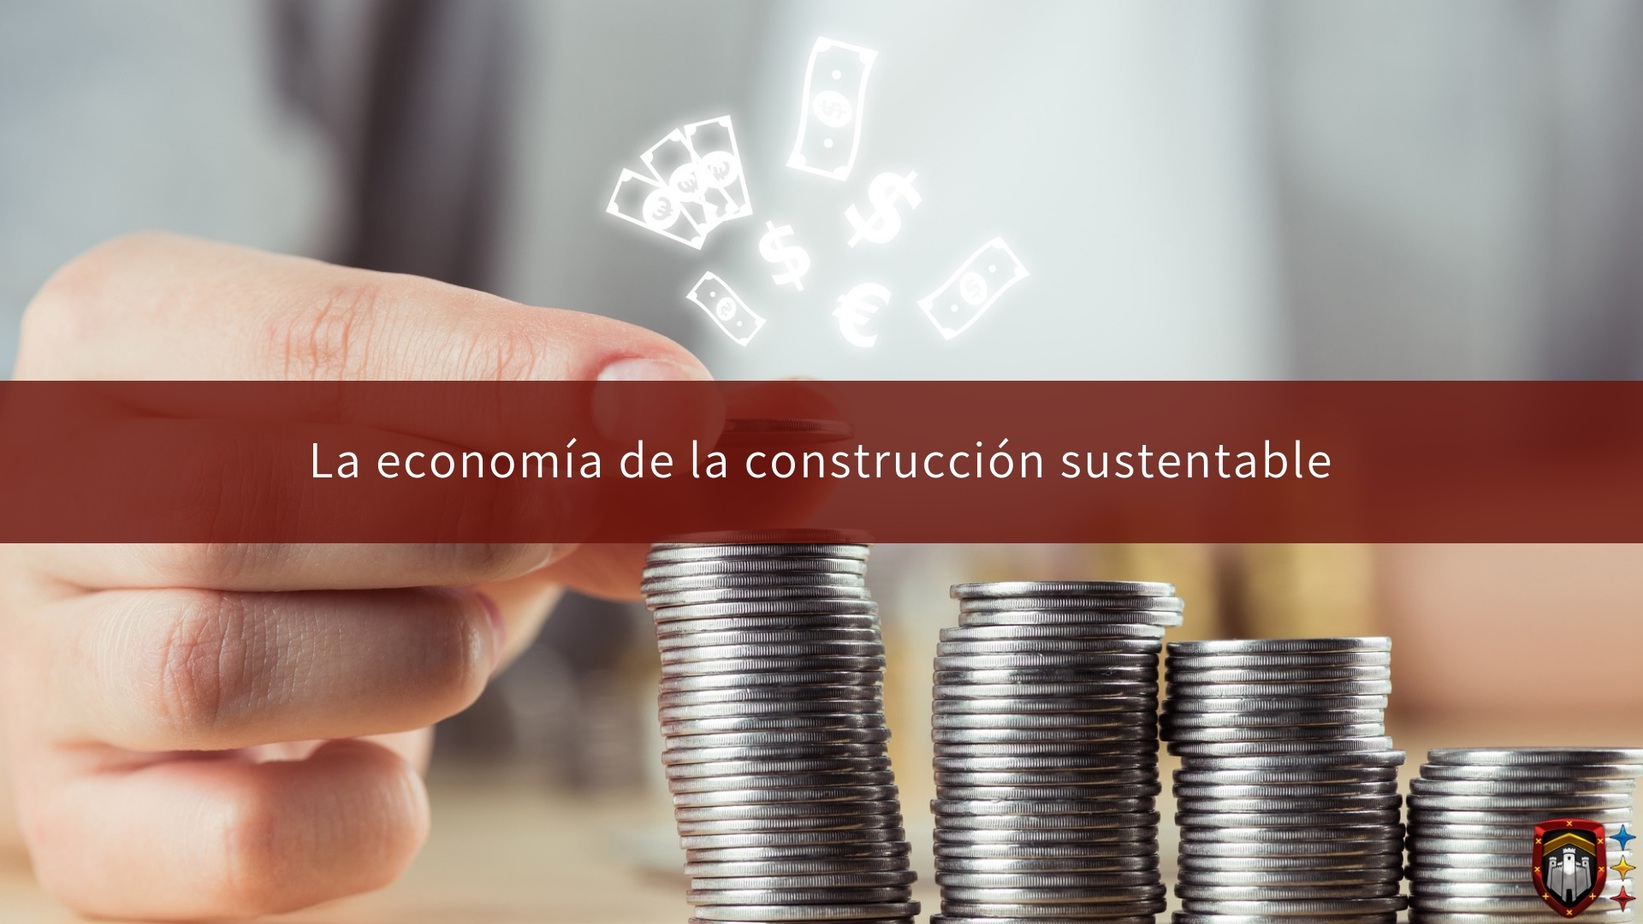 La economía de la construcción sustentable